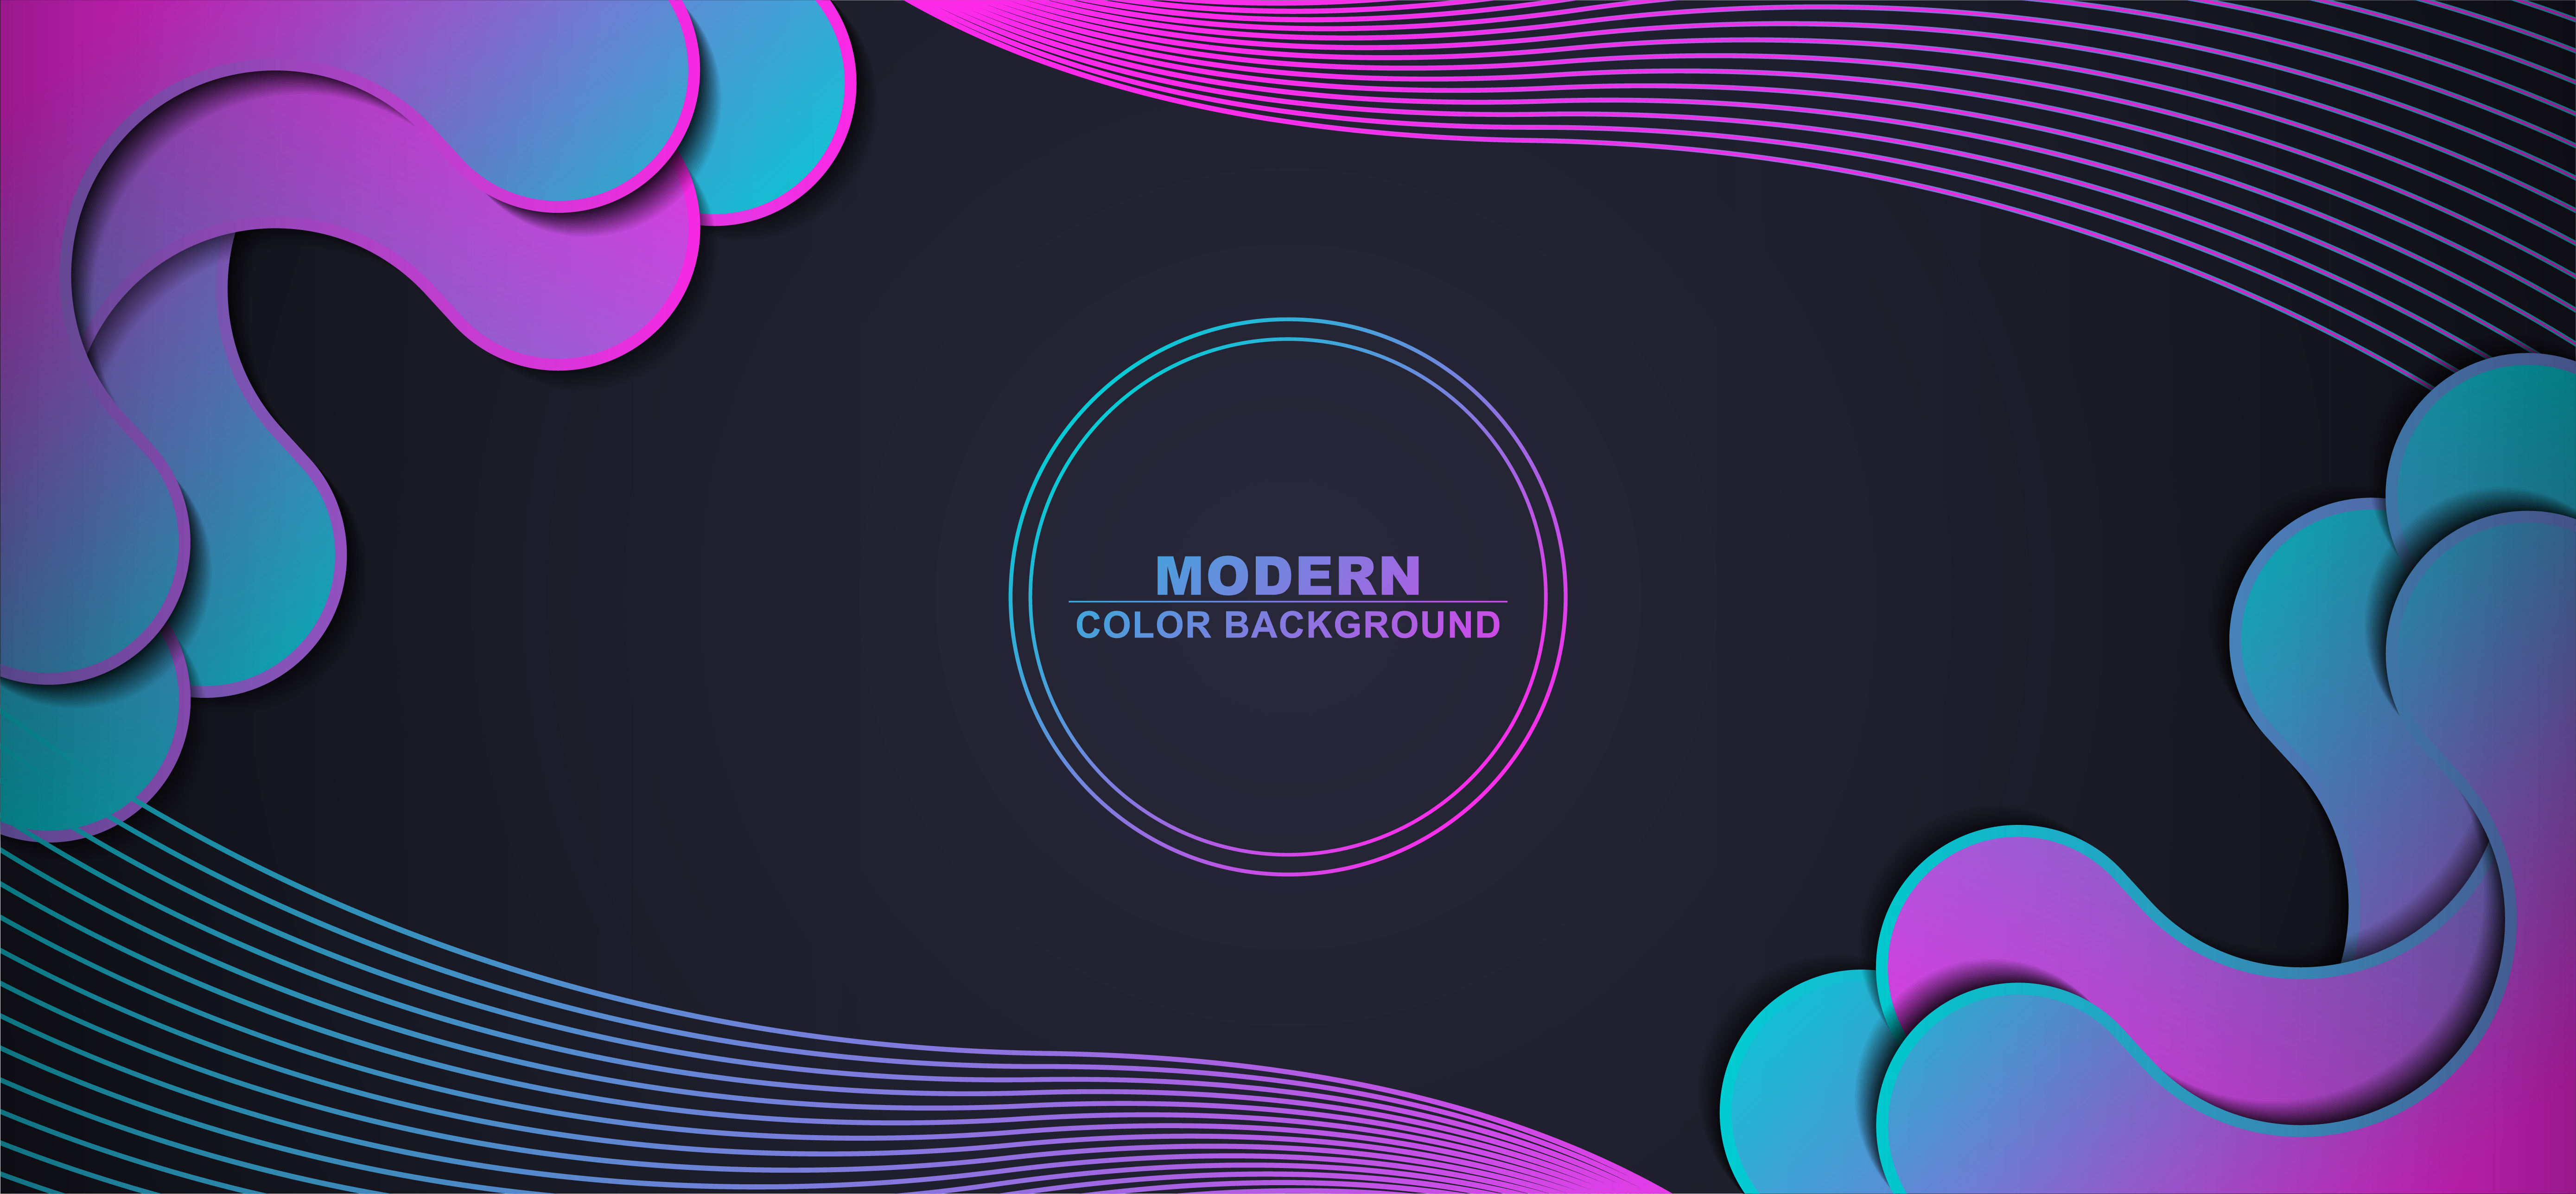 purple and blue shapes: Để tạo ra một trang web hiện đại và độc đáo, bạn cần sử dụng những hình ảnh nghệ thuật như hình ảnh liên quan đến hình dáng màu tím và xanh lam. Hình ảnh này sẽ giúp bạn tạo ra một trang web độc đáo, đầy màu sắc và thu hút.